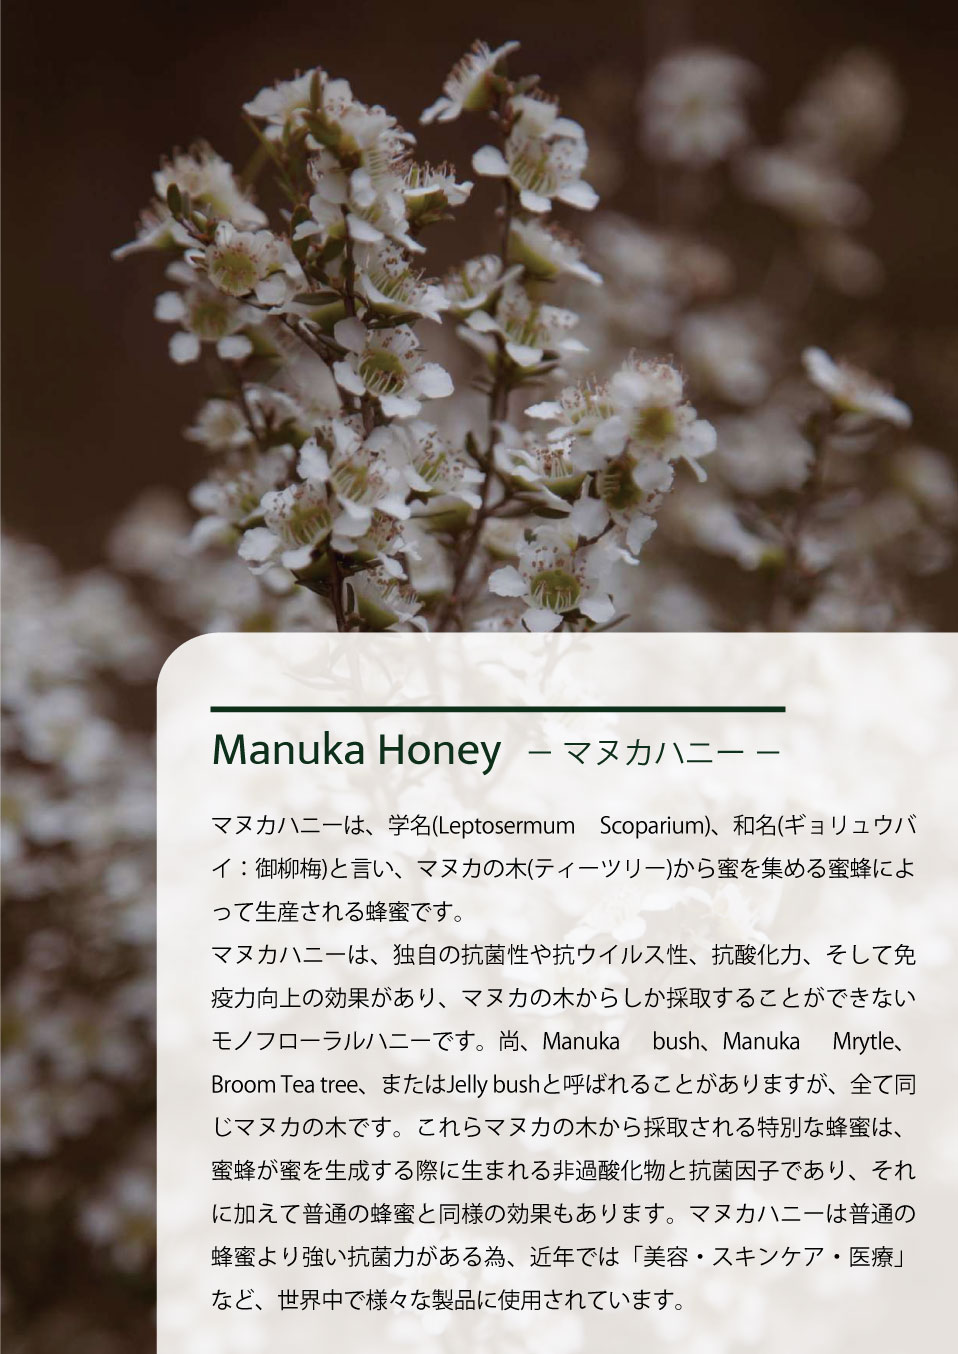 Manuka Honey－ マヌカハニー －。マヌカハニーは、学名(Leptosermum Scoparium)、和名(ギョリュウバイ：御柳梅)と言い、マヌカの木(ティーツリー)から蜜を集める蜜蜂によって生産される蜂蜜です。マヌカハニーは、独自の抗菌性や抗ウイルス性、抗酸化力、そして免疫力向上の効果があり、マヌカの木からしか採取することができないモノフローラルハニーです。尚、Manuka bush、Manuka Mrytle、Broom Tea tree、またはJelly bushと呼ばれることがありますが、全て同じマヌカの木です。これらマヌカの木から採取される特別な蜂蜜は、蜜蜂が蜜を生成する際に生まれる非過酸化物と抗菌因子であり、それに加えて普通の蜂蜜と同様の効果もあります。マヌカハニーは普通の蜂蜜より強い抗菌力がある為、近年では「美容・スキンケア・医療」など、世界中で様々な製品に使用されています。